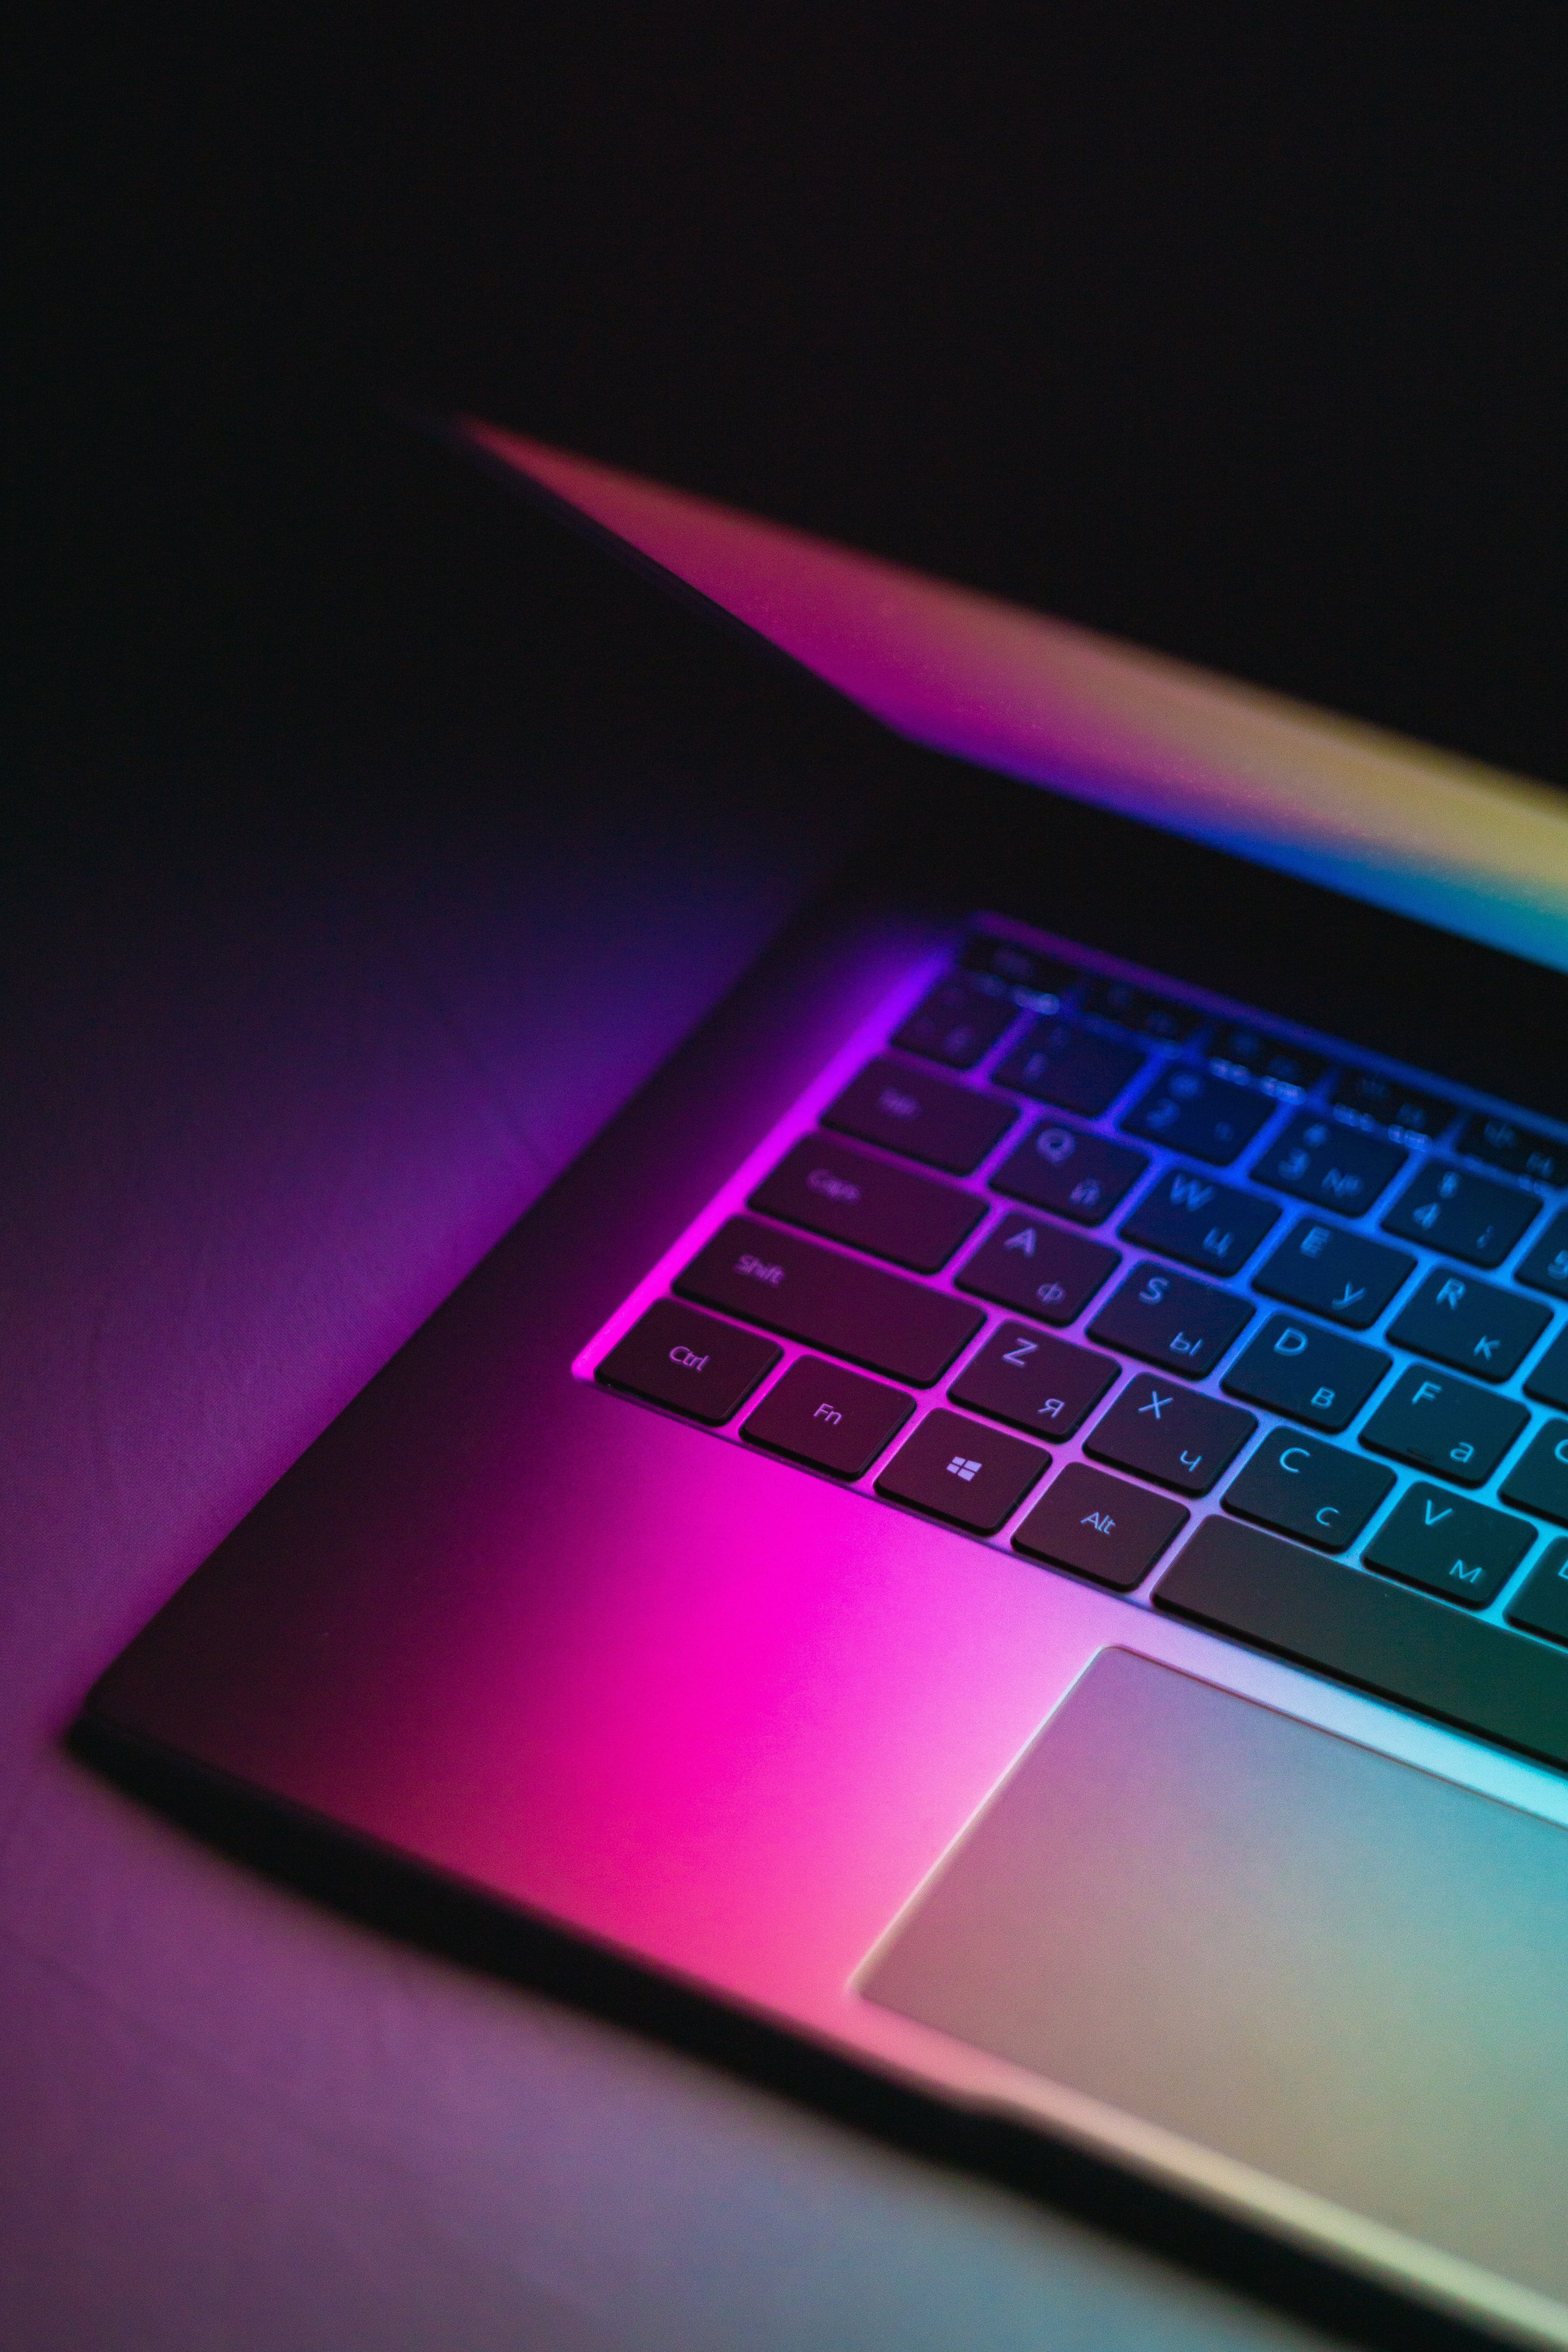 Desktop Backgrounds Laptop notebook, dark, keys, gradient